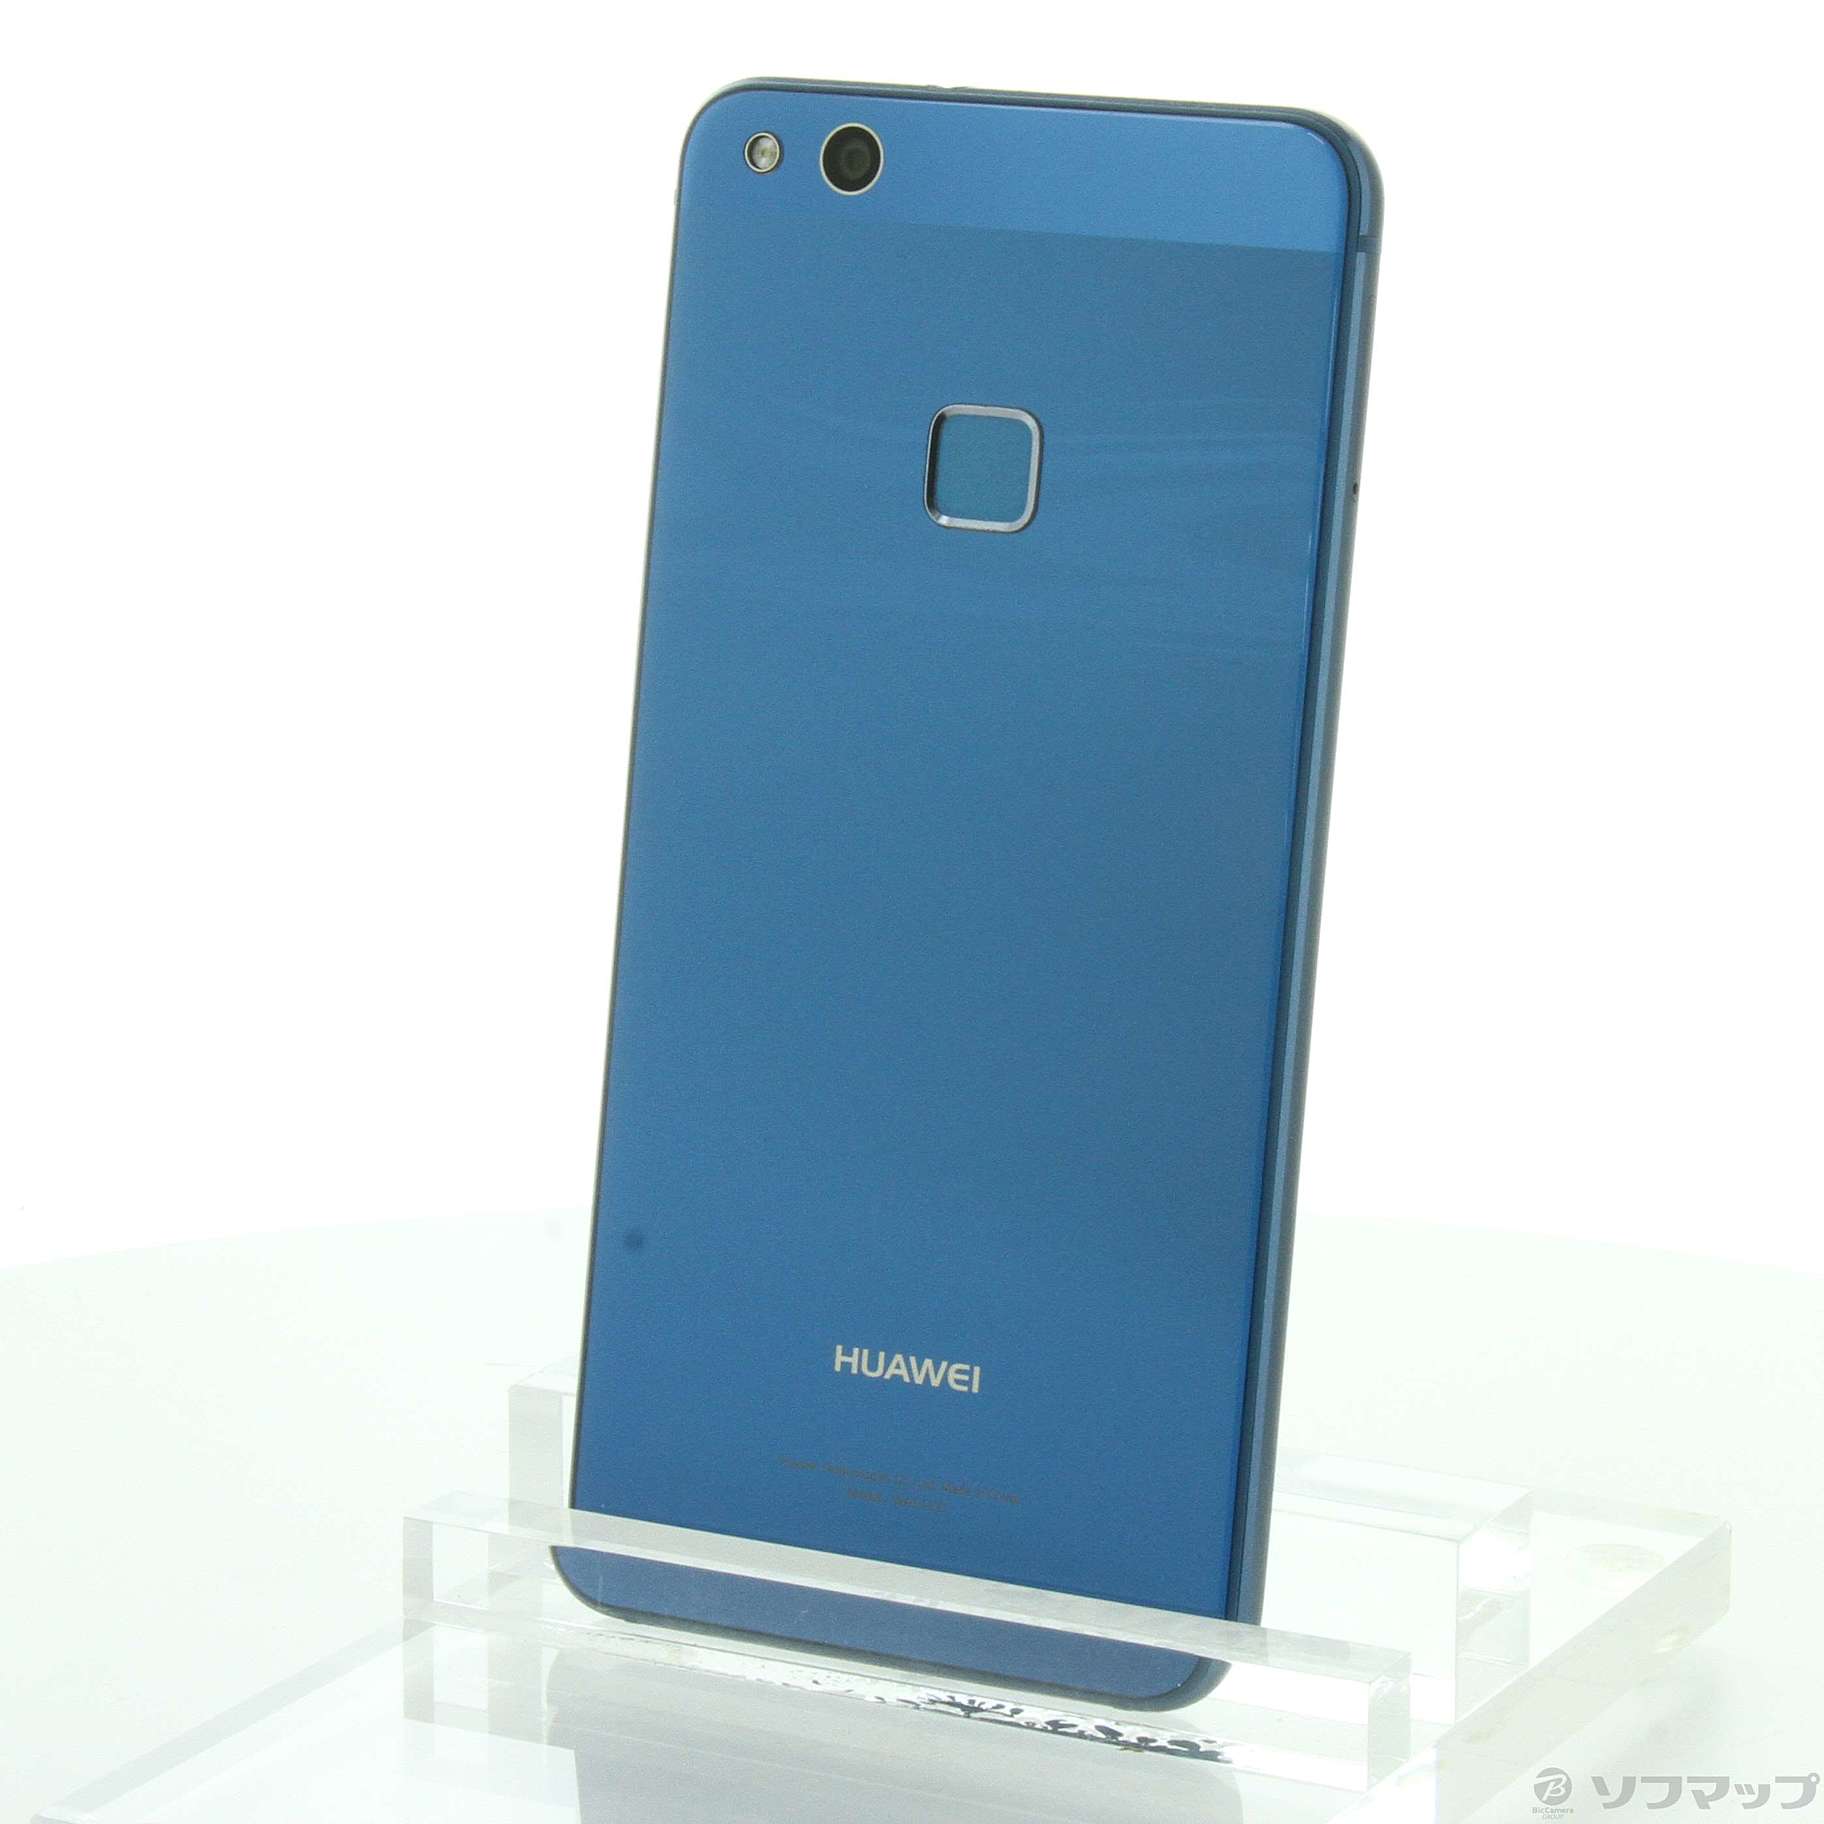 HUAWEI P10 lite 32GB ブルー【新品・未開封】 - スマートフォン本体